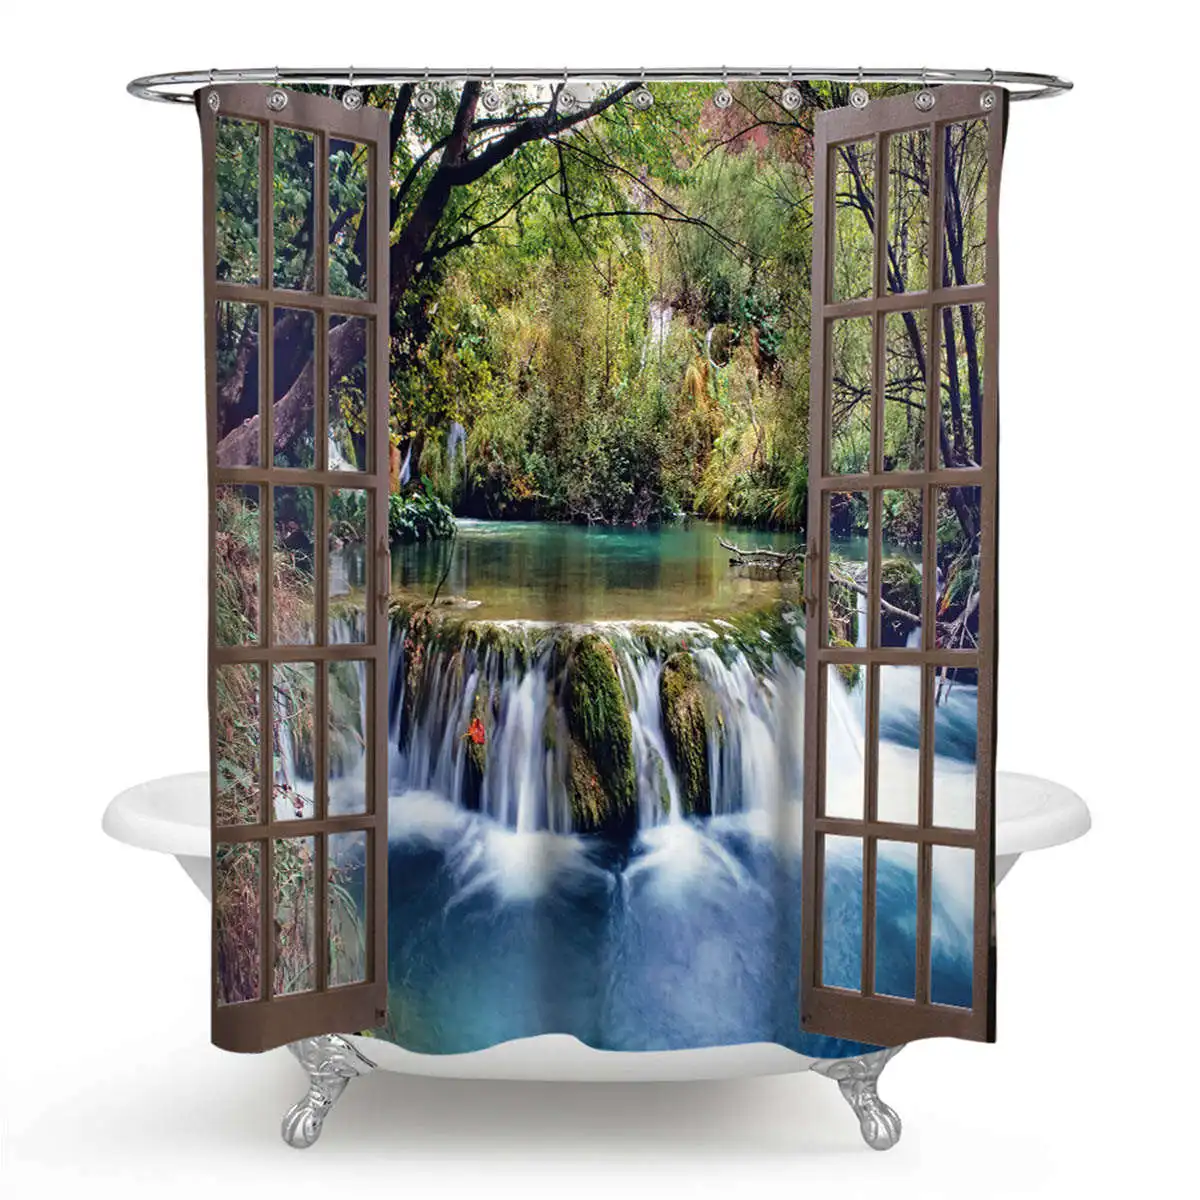 3D водопад пейзаж водонепроницаемый занавеска для душа для ванной Пейзаж Деревья цветок коврик для ванной комплект пьедестал коврик крышка Туалет крышка - Цвет: K Shower curtain